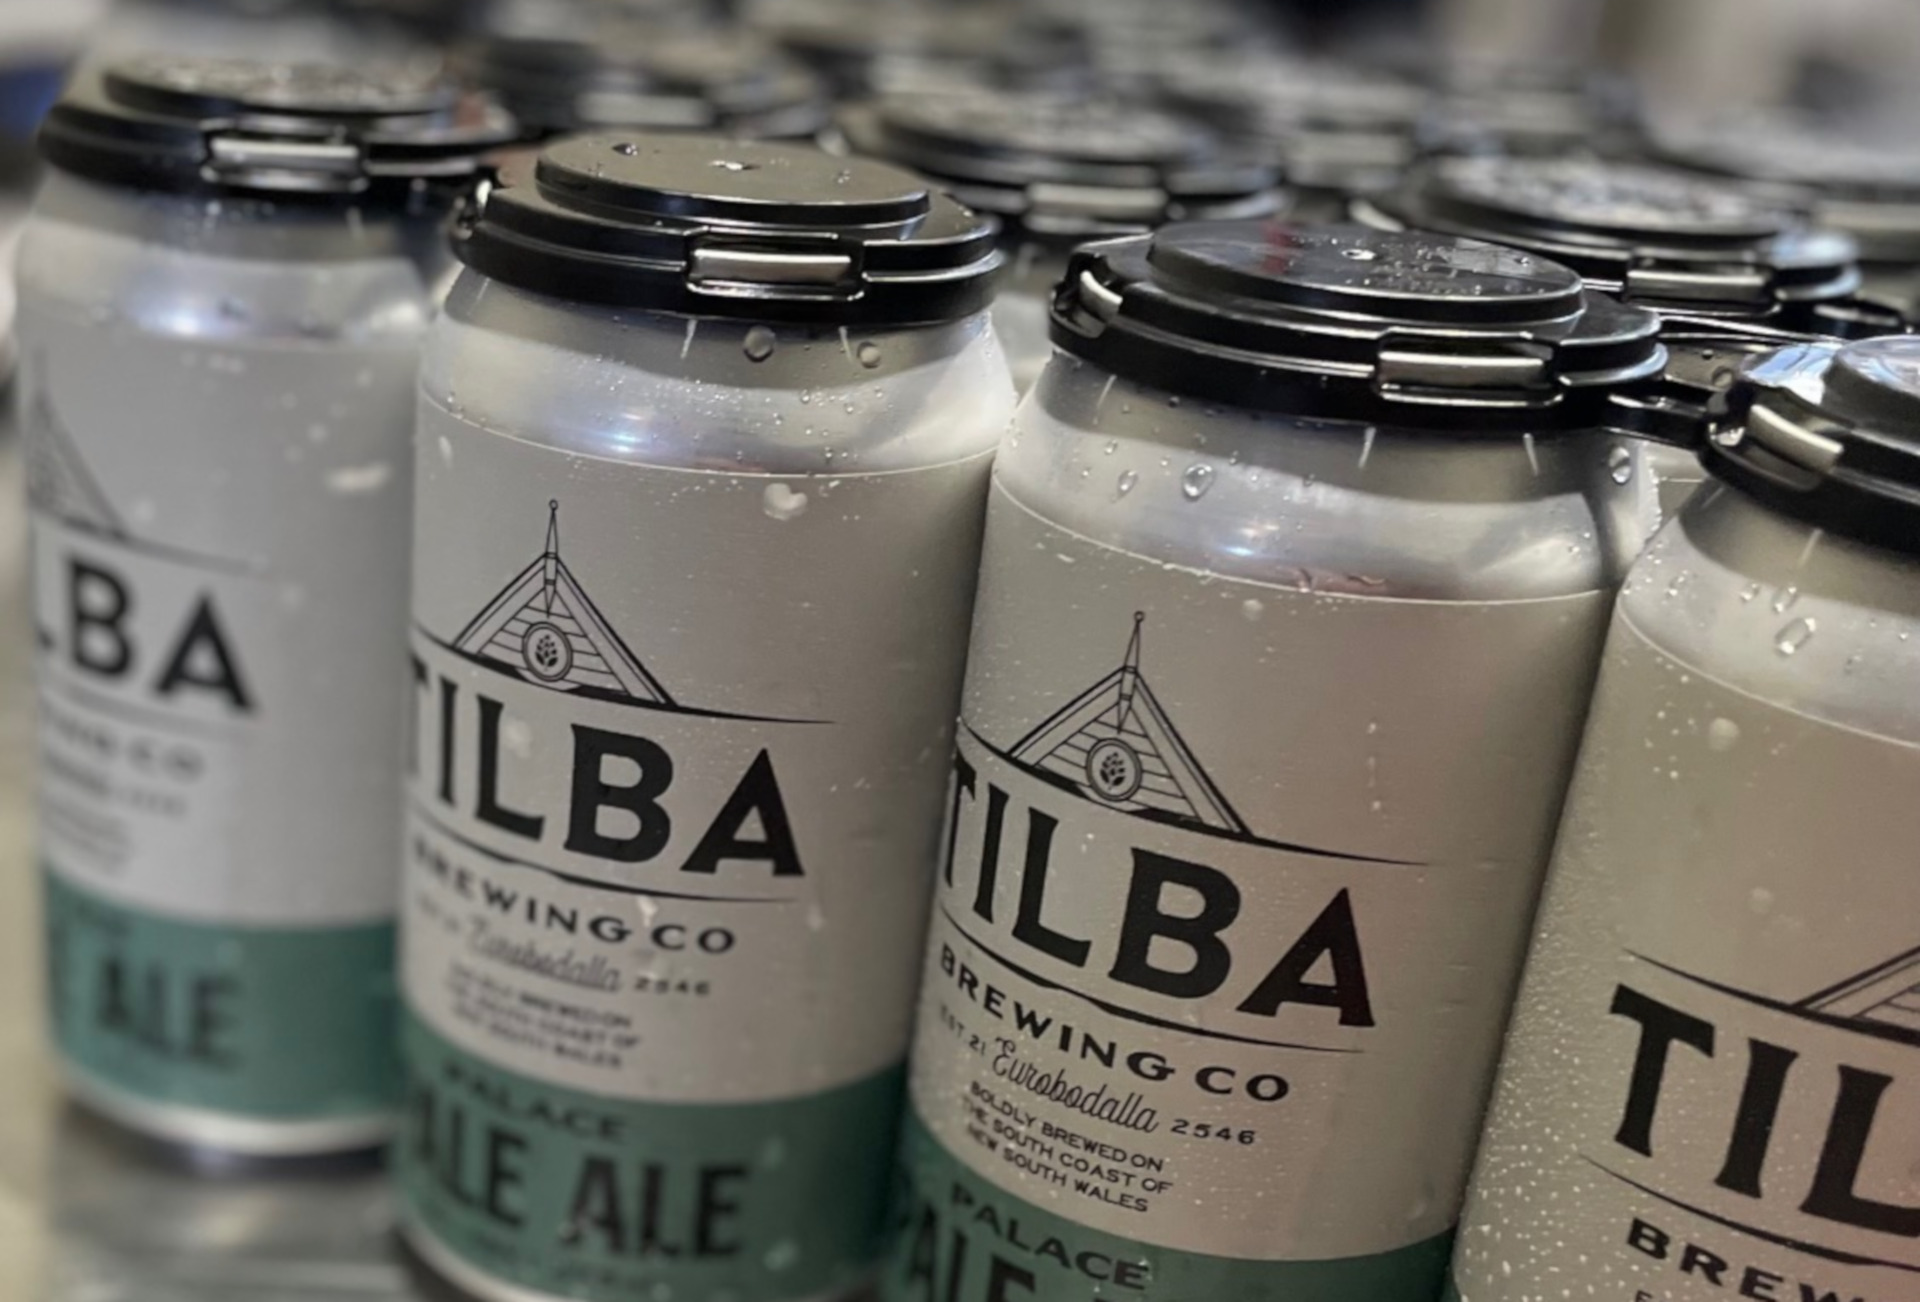 tilba-brewing3.jpg